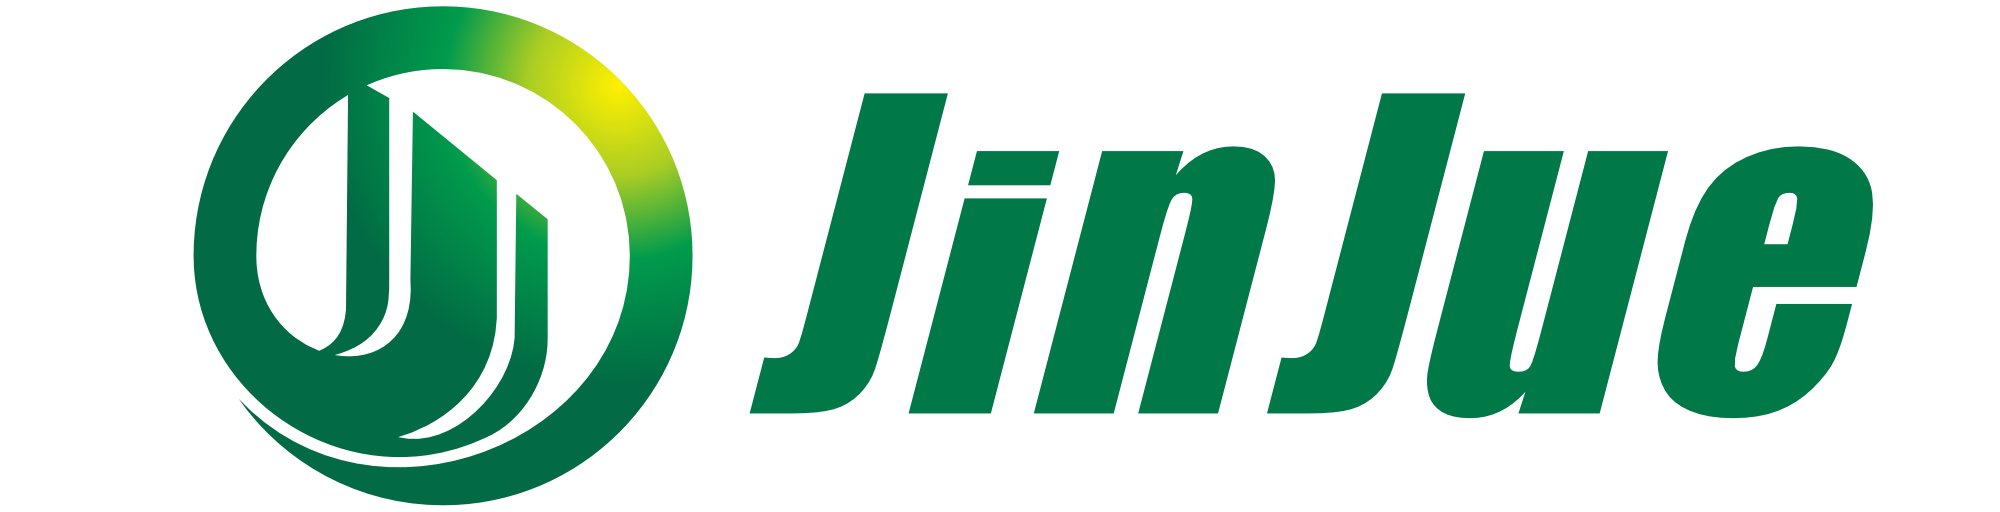 Filtro Jinjue Co., Ltd